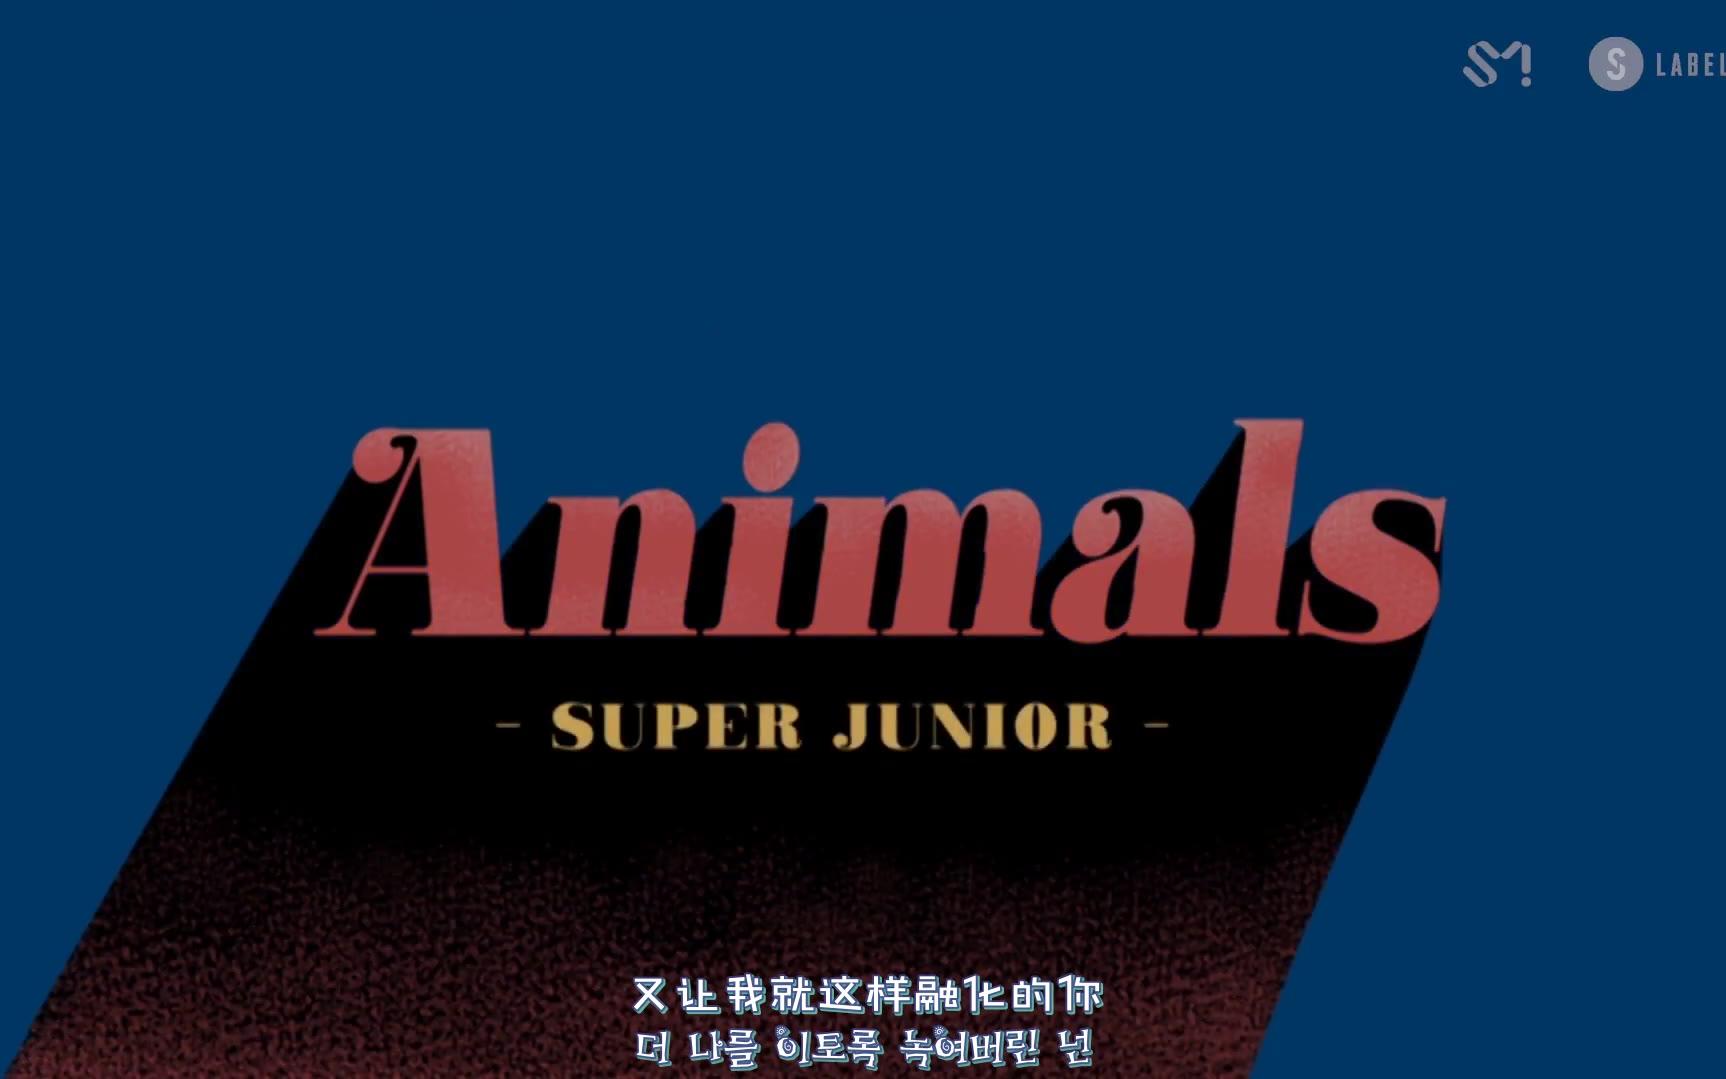 SUPER JUNIOR dévoile le MV de « Animals » – K-GEN